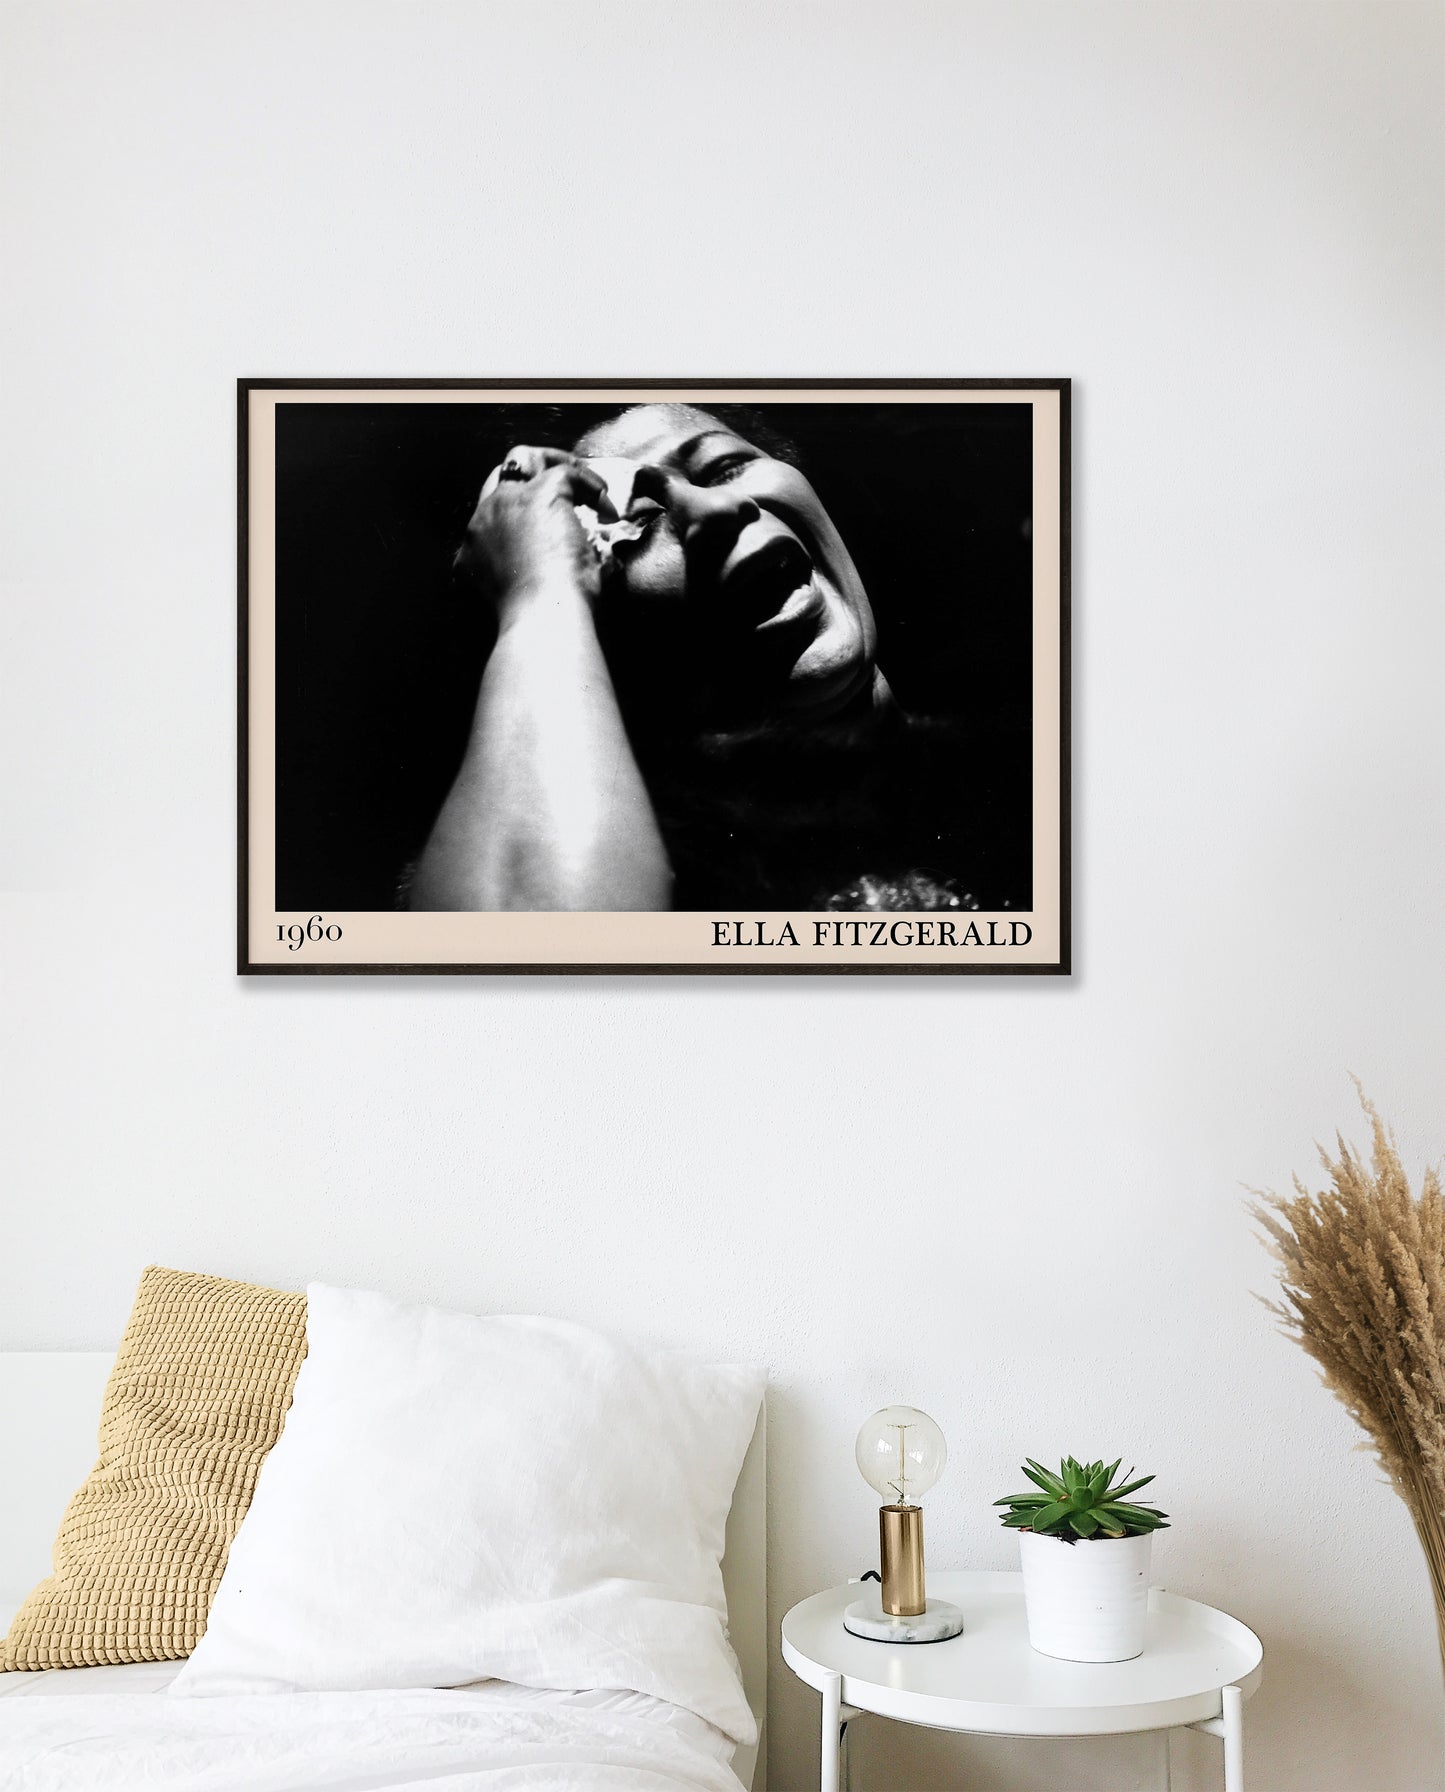 Cool framed bedroom A1 jazz poster of Ella Fitzgerald